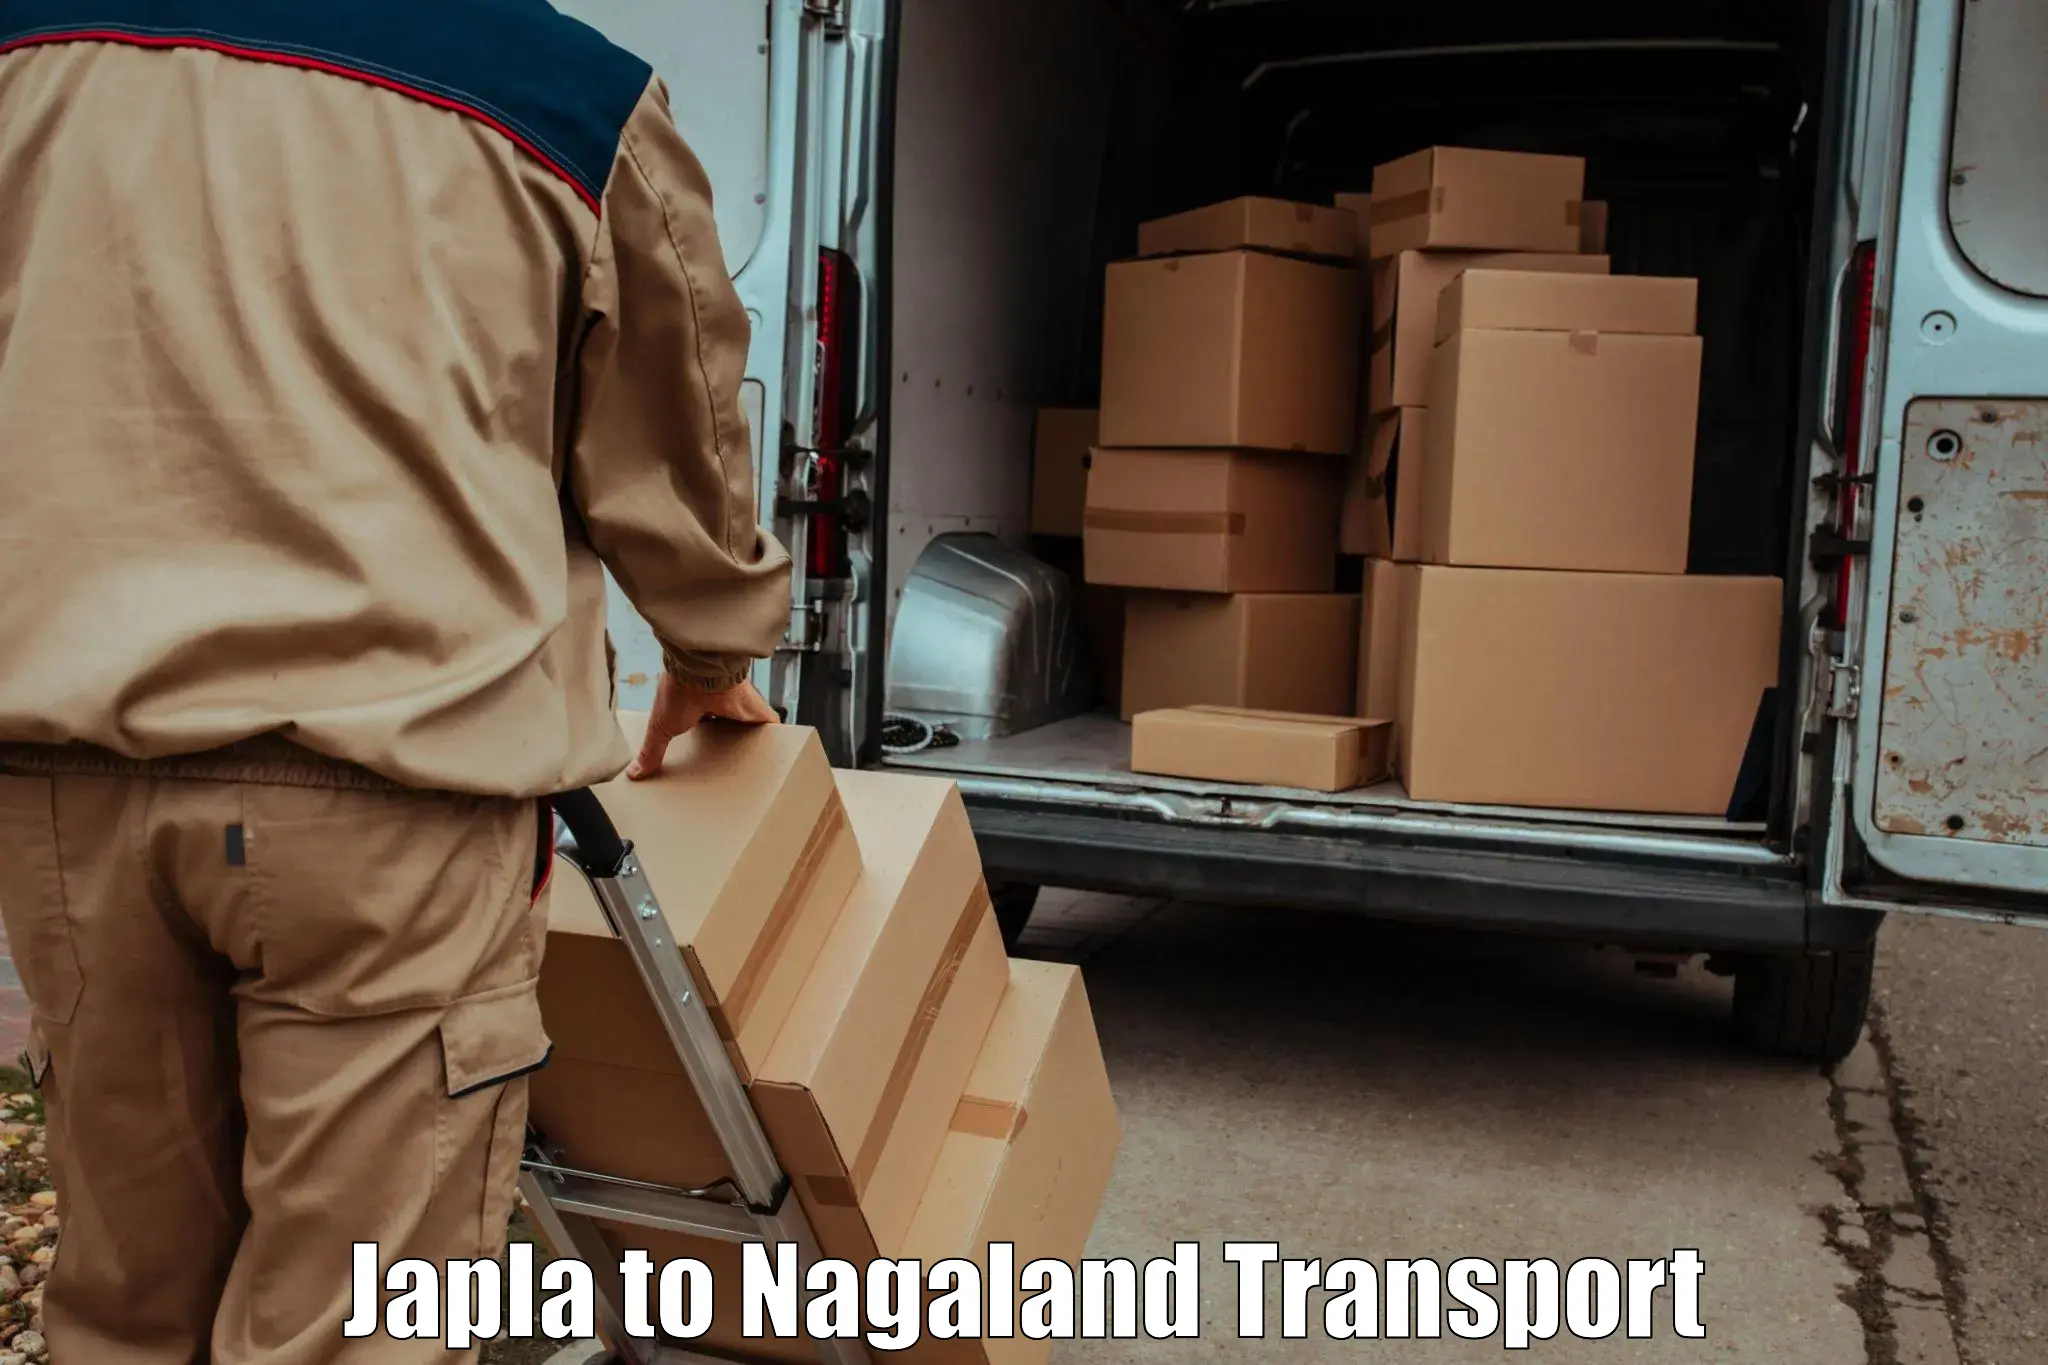 Online transport service Japla to Nagaland